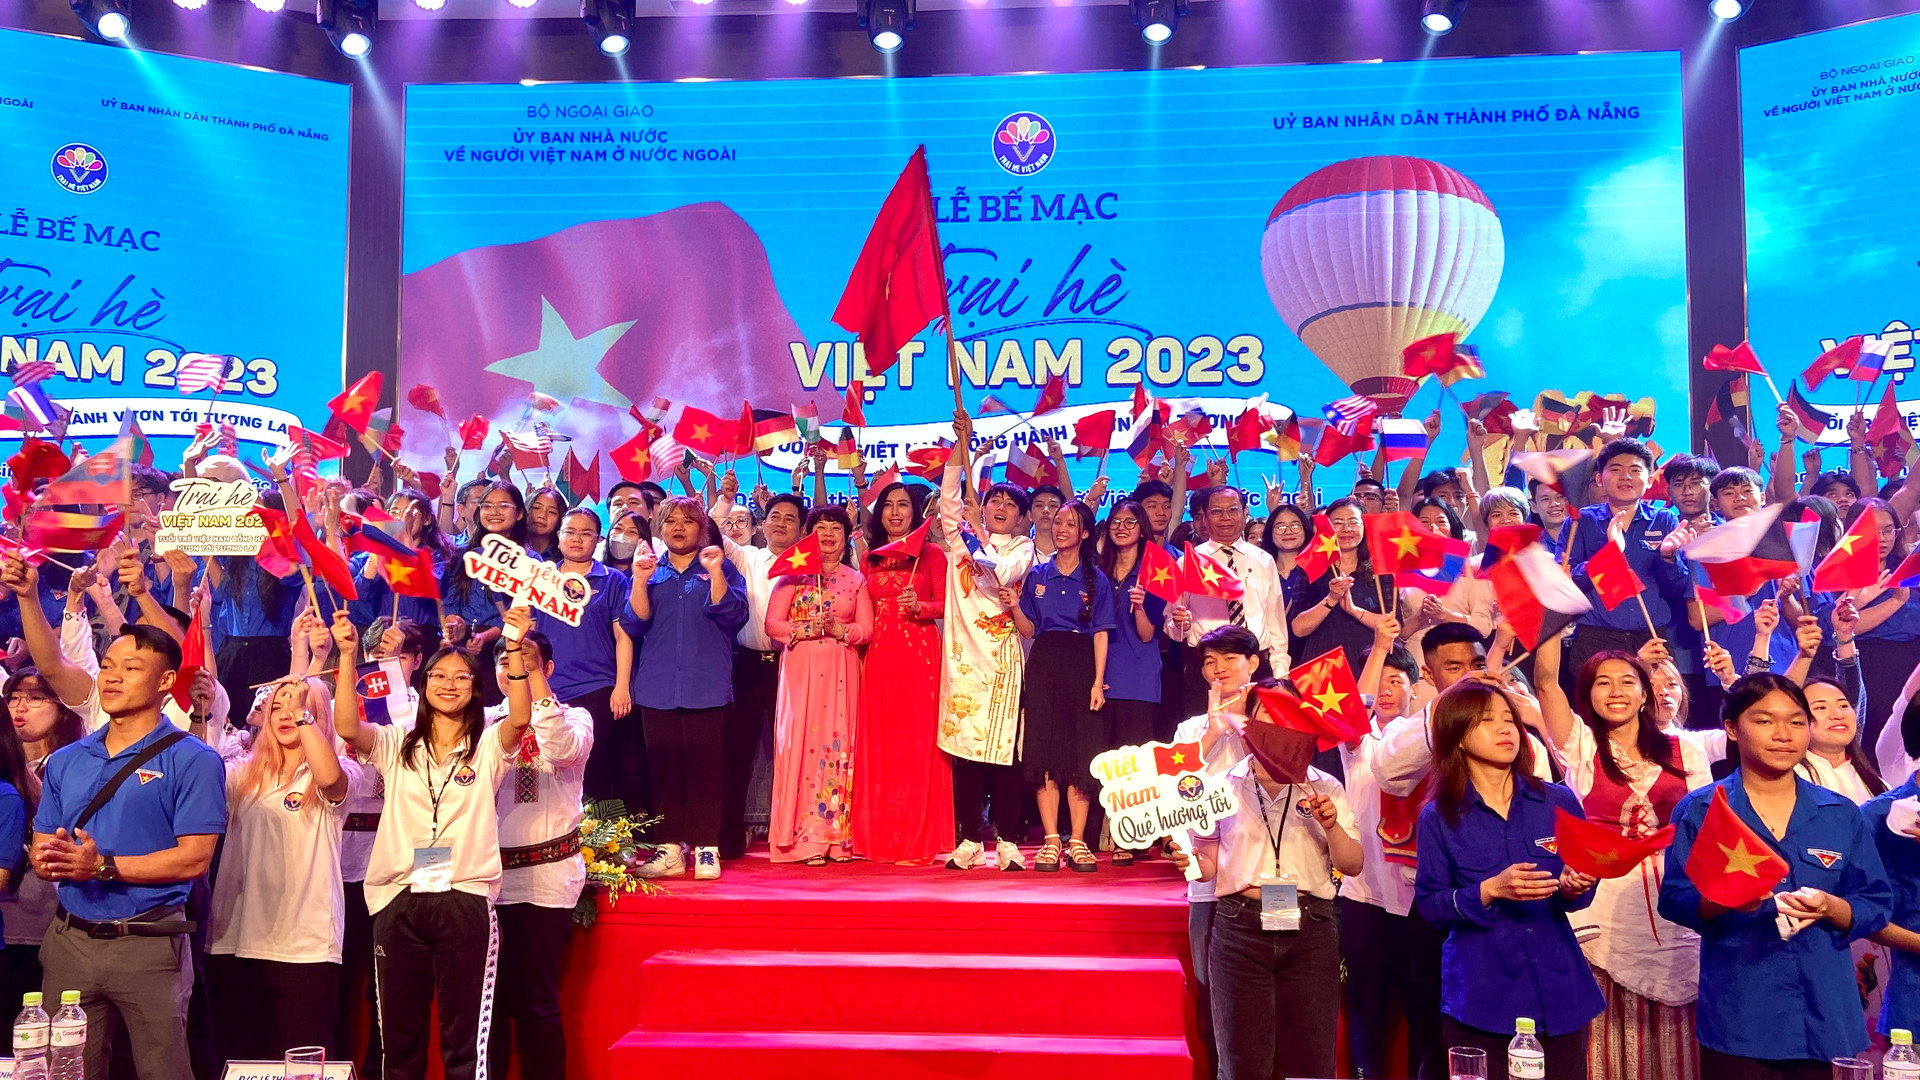 Trại hè Việt Nam 2023: Kết nối thanh niên kiều bào với nguồn cội, văn hóa Việt Nam - ảnh 1